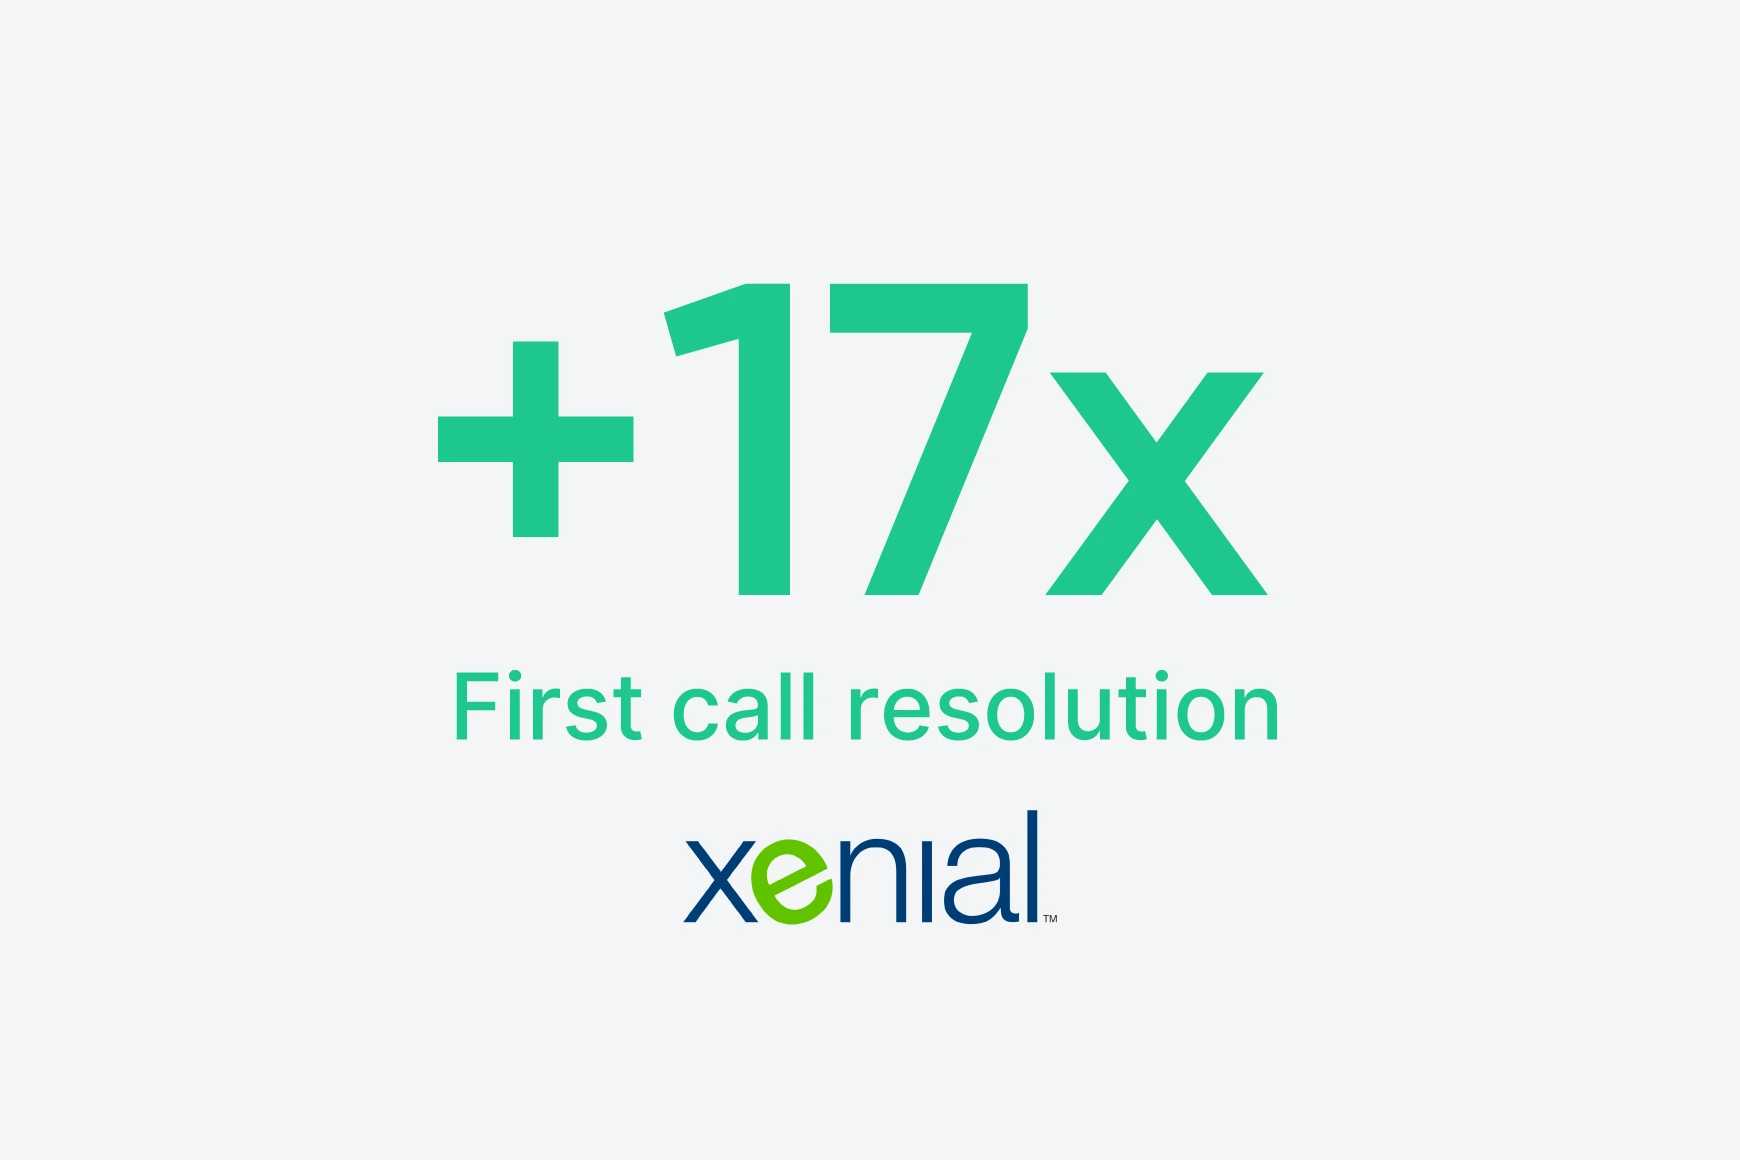 A Xenial aumentou a resolução na primeira chamada em 17x